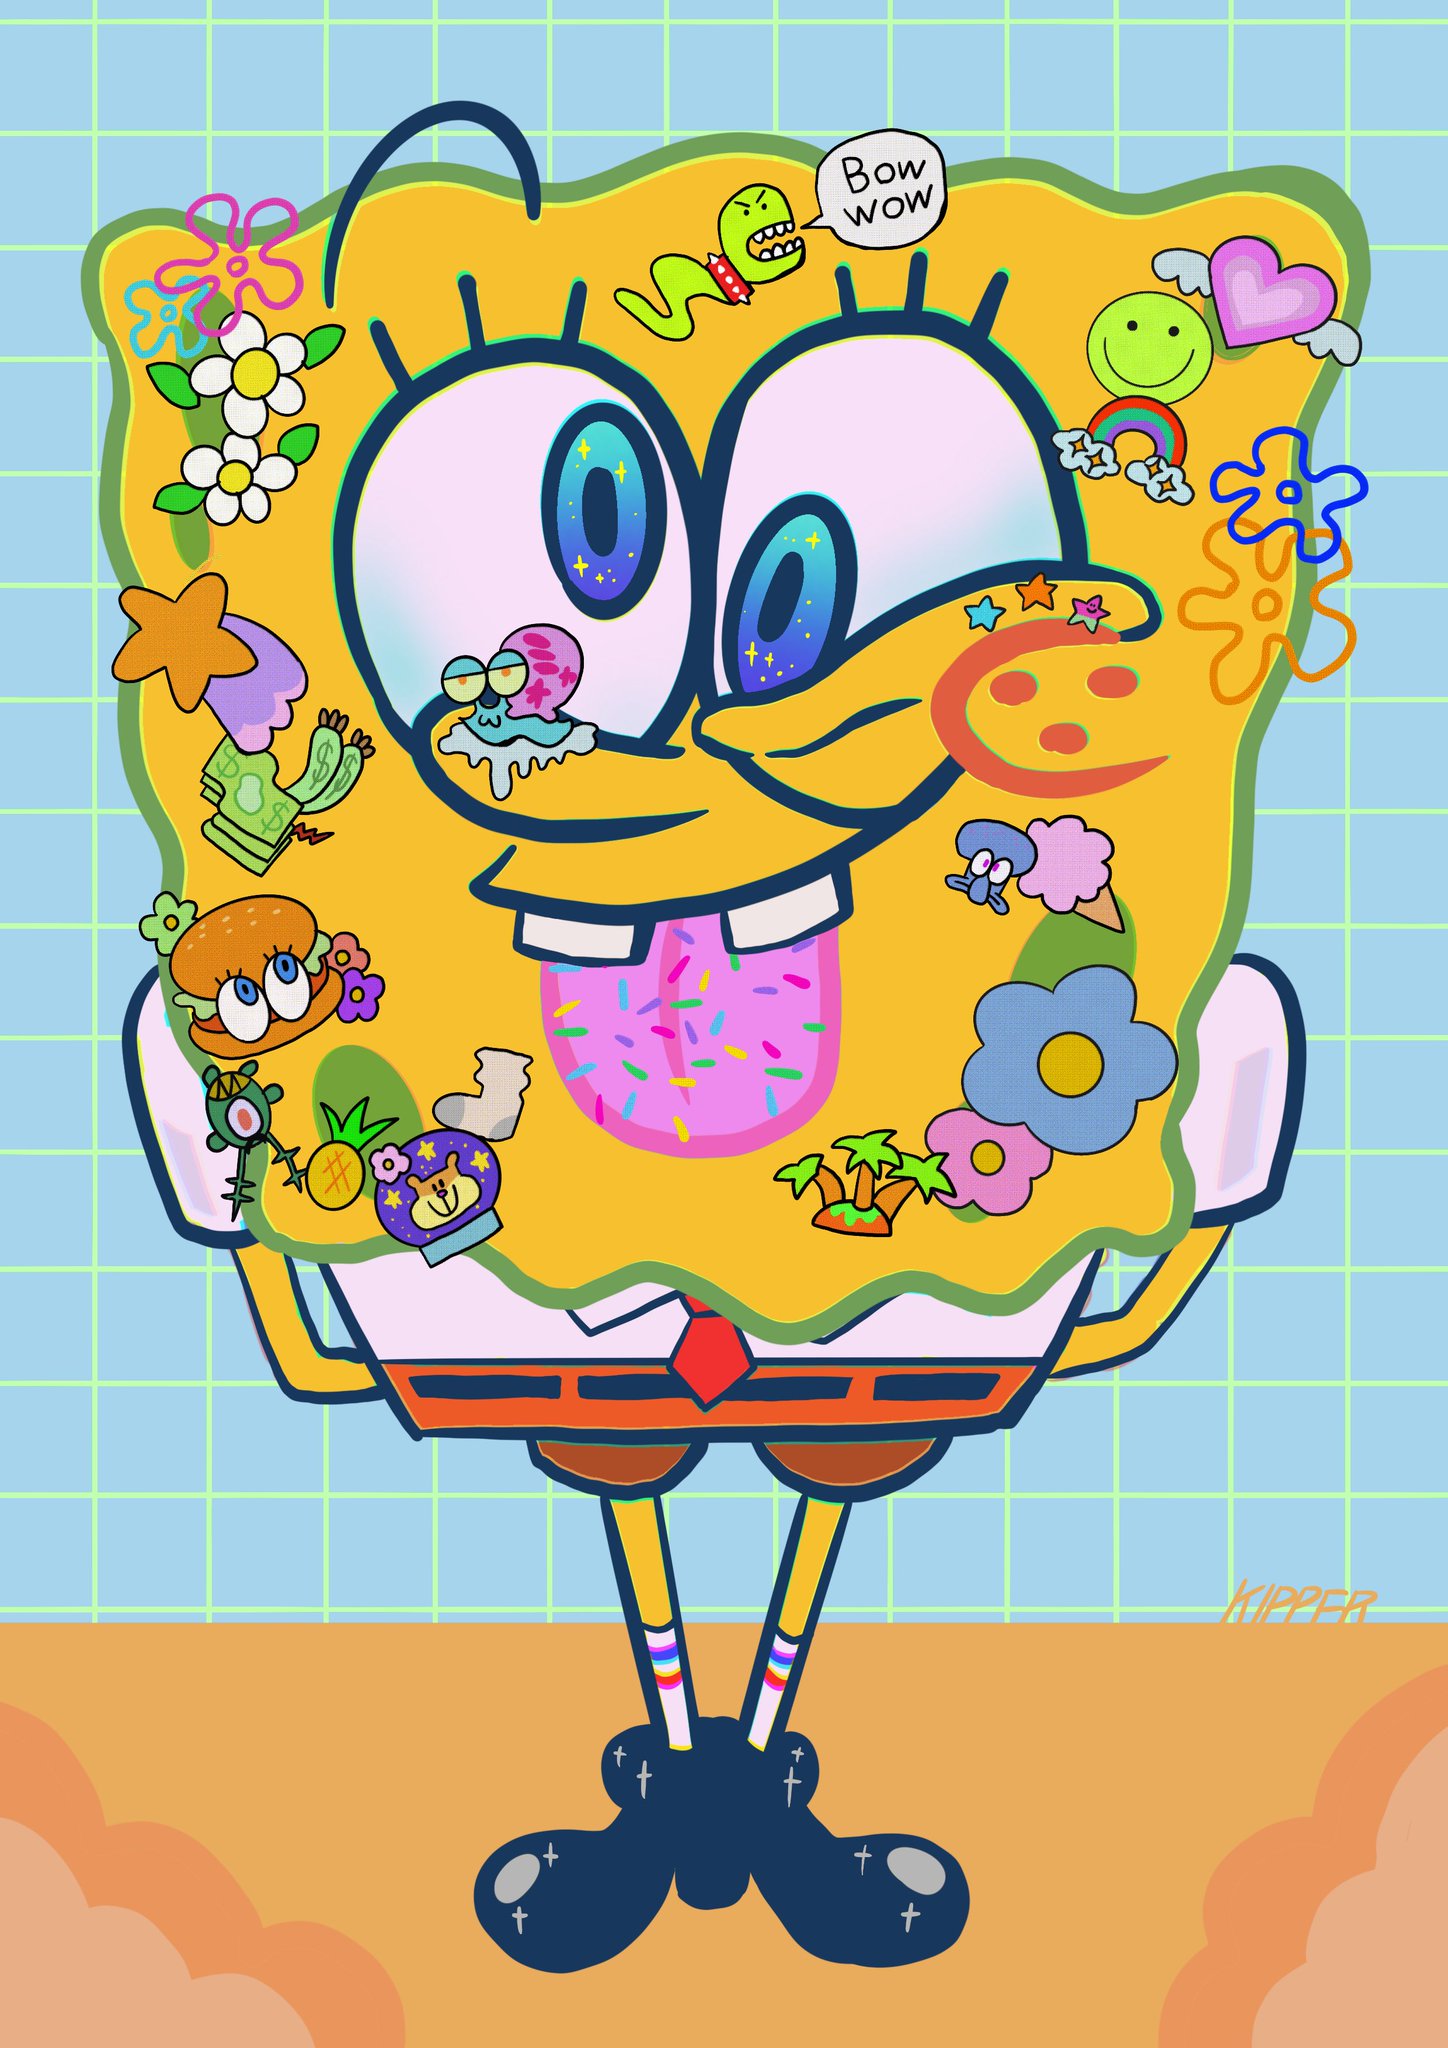   Happy Birthday SpongeBob SquarePants  